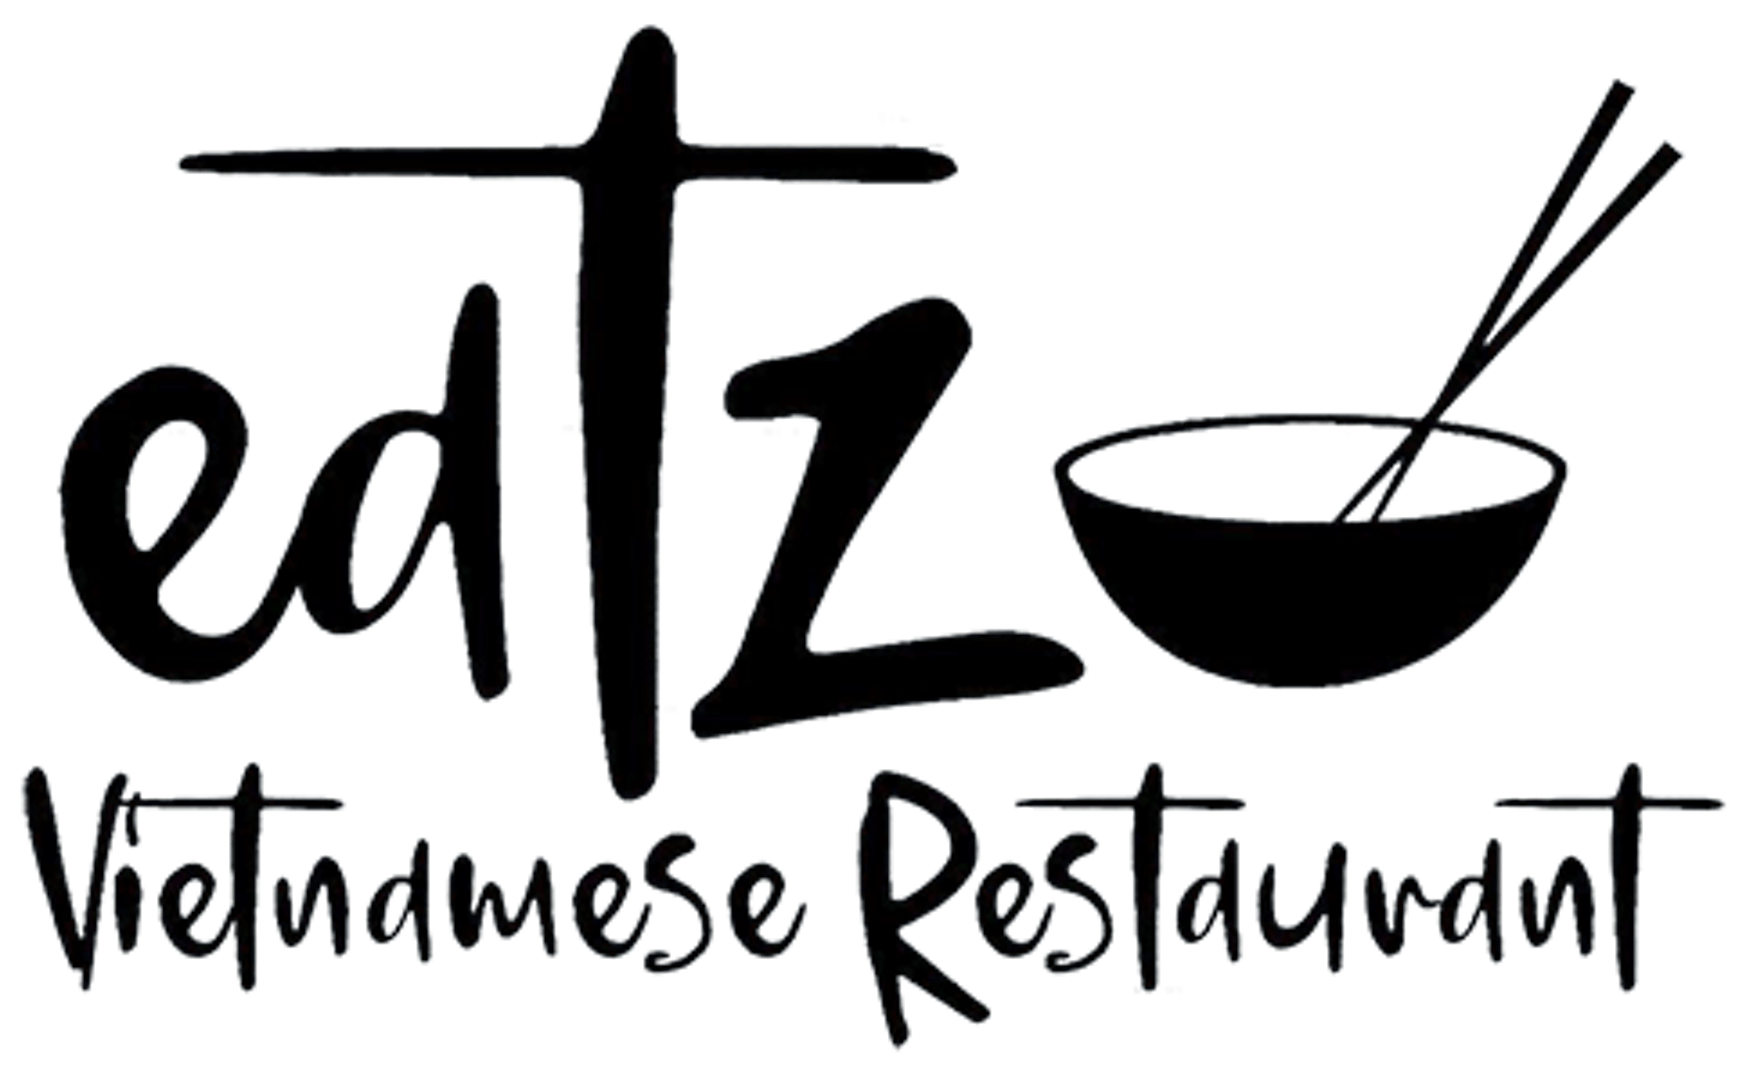 [inactive] Eatz Vietnamese Restaurant